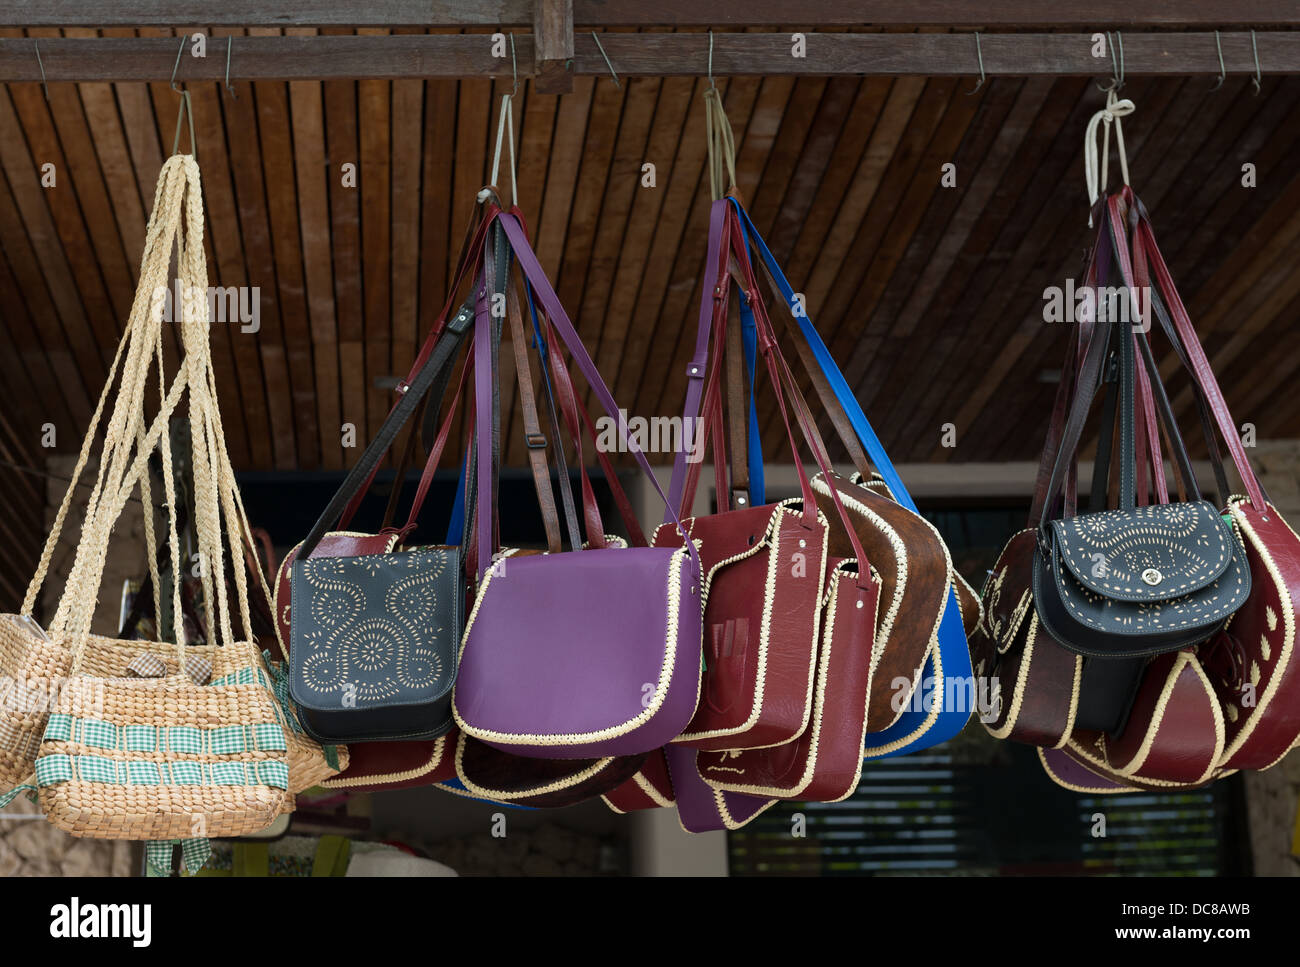 boutique handbag display ideas